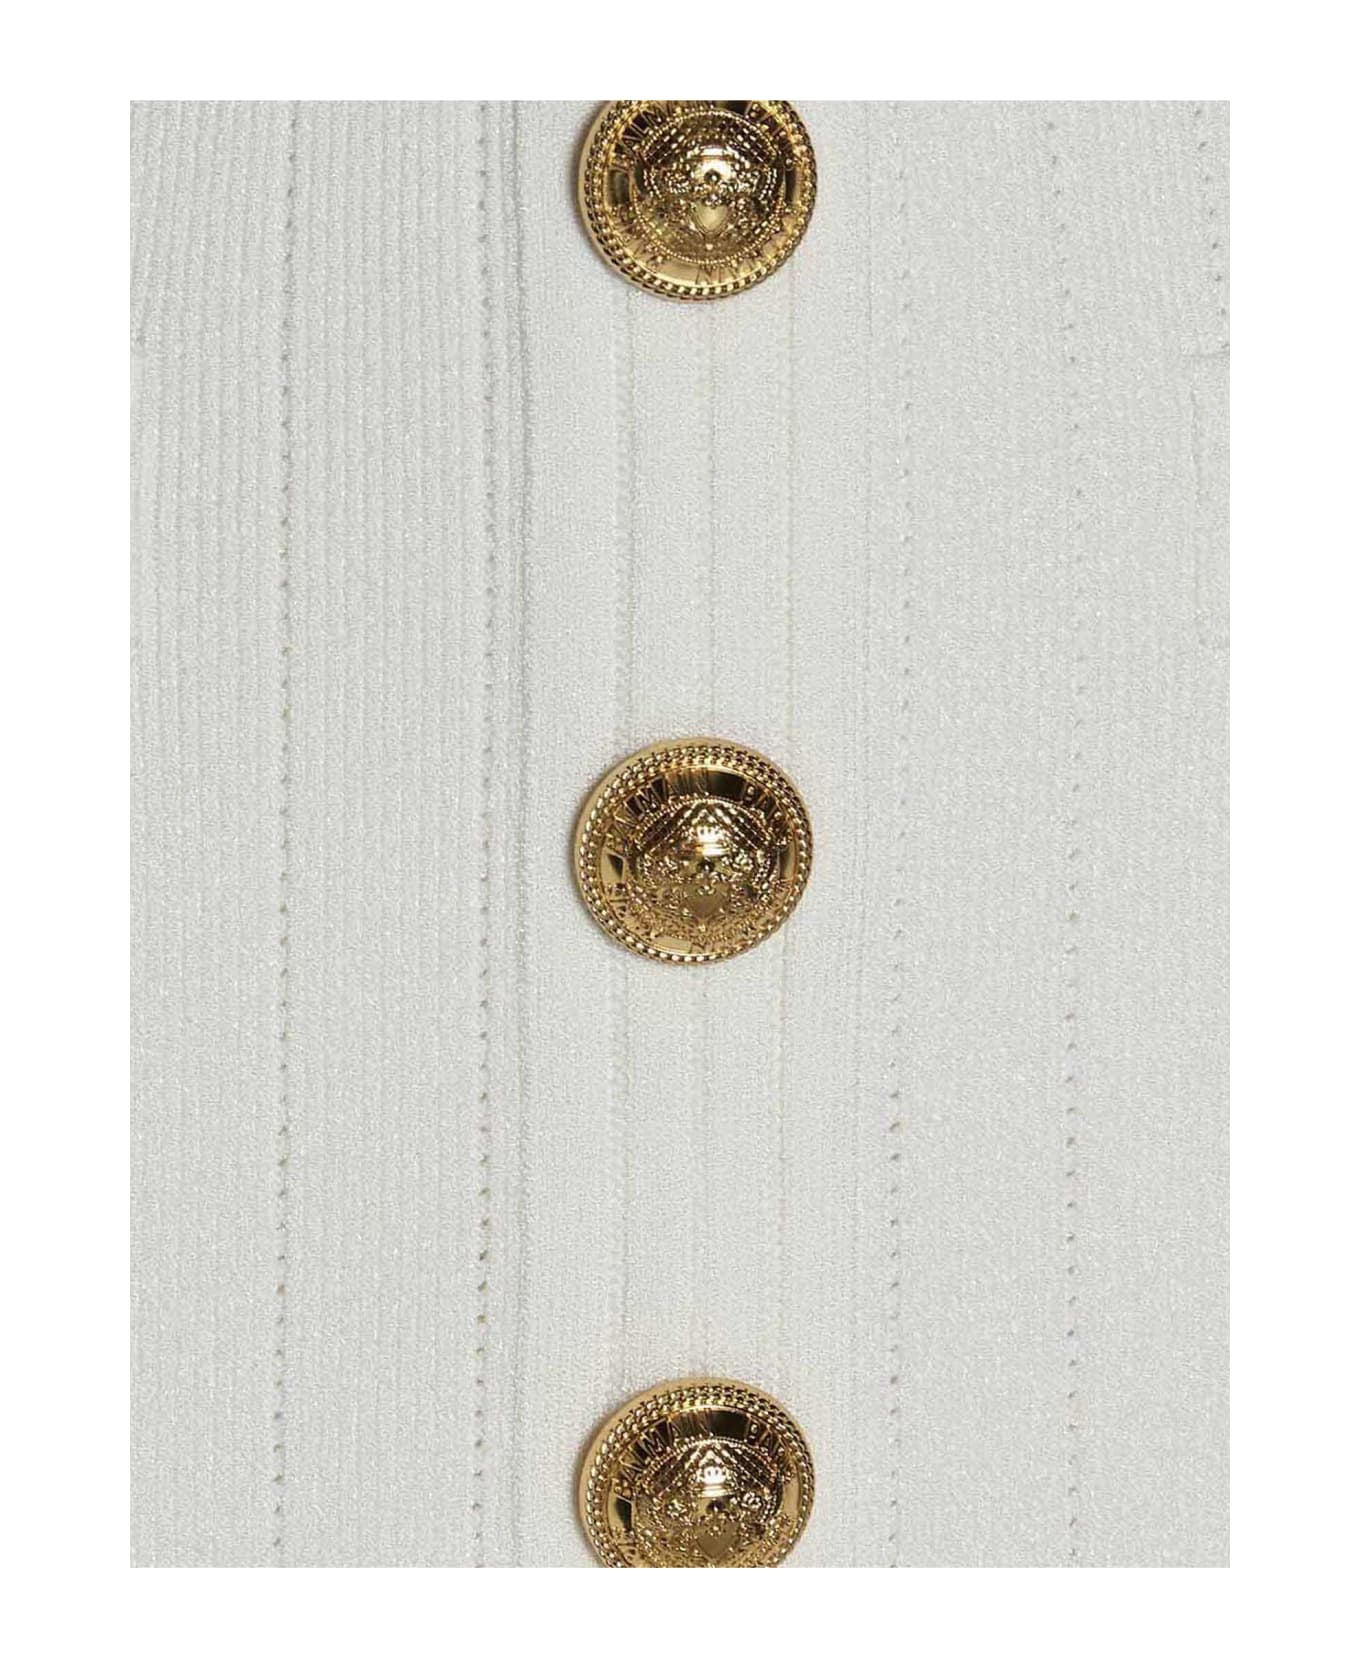 Balmain Logo Button Knit Dress - White